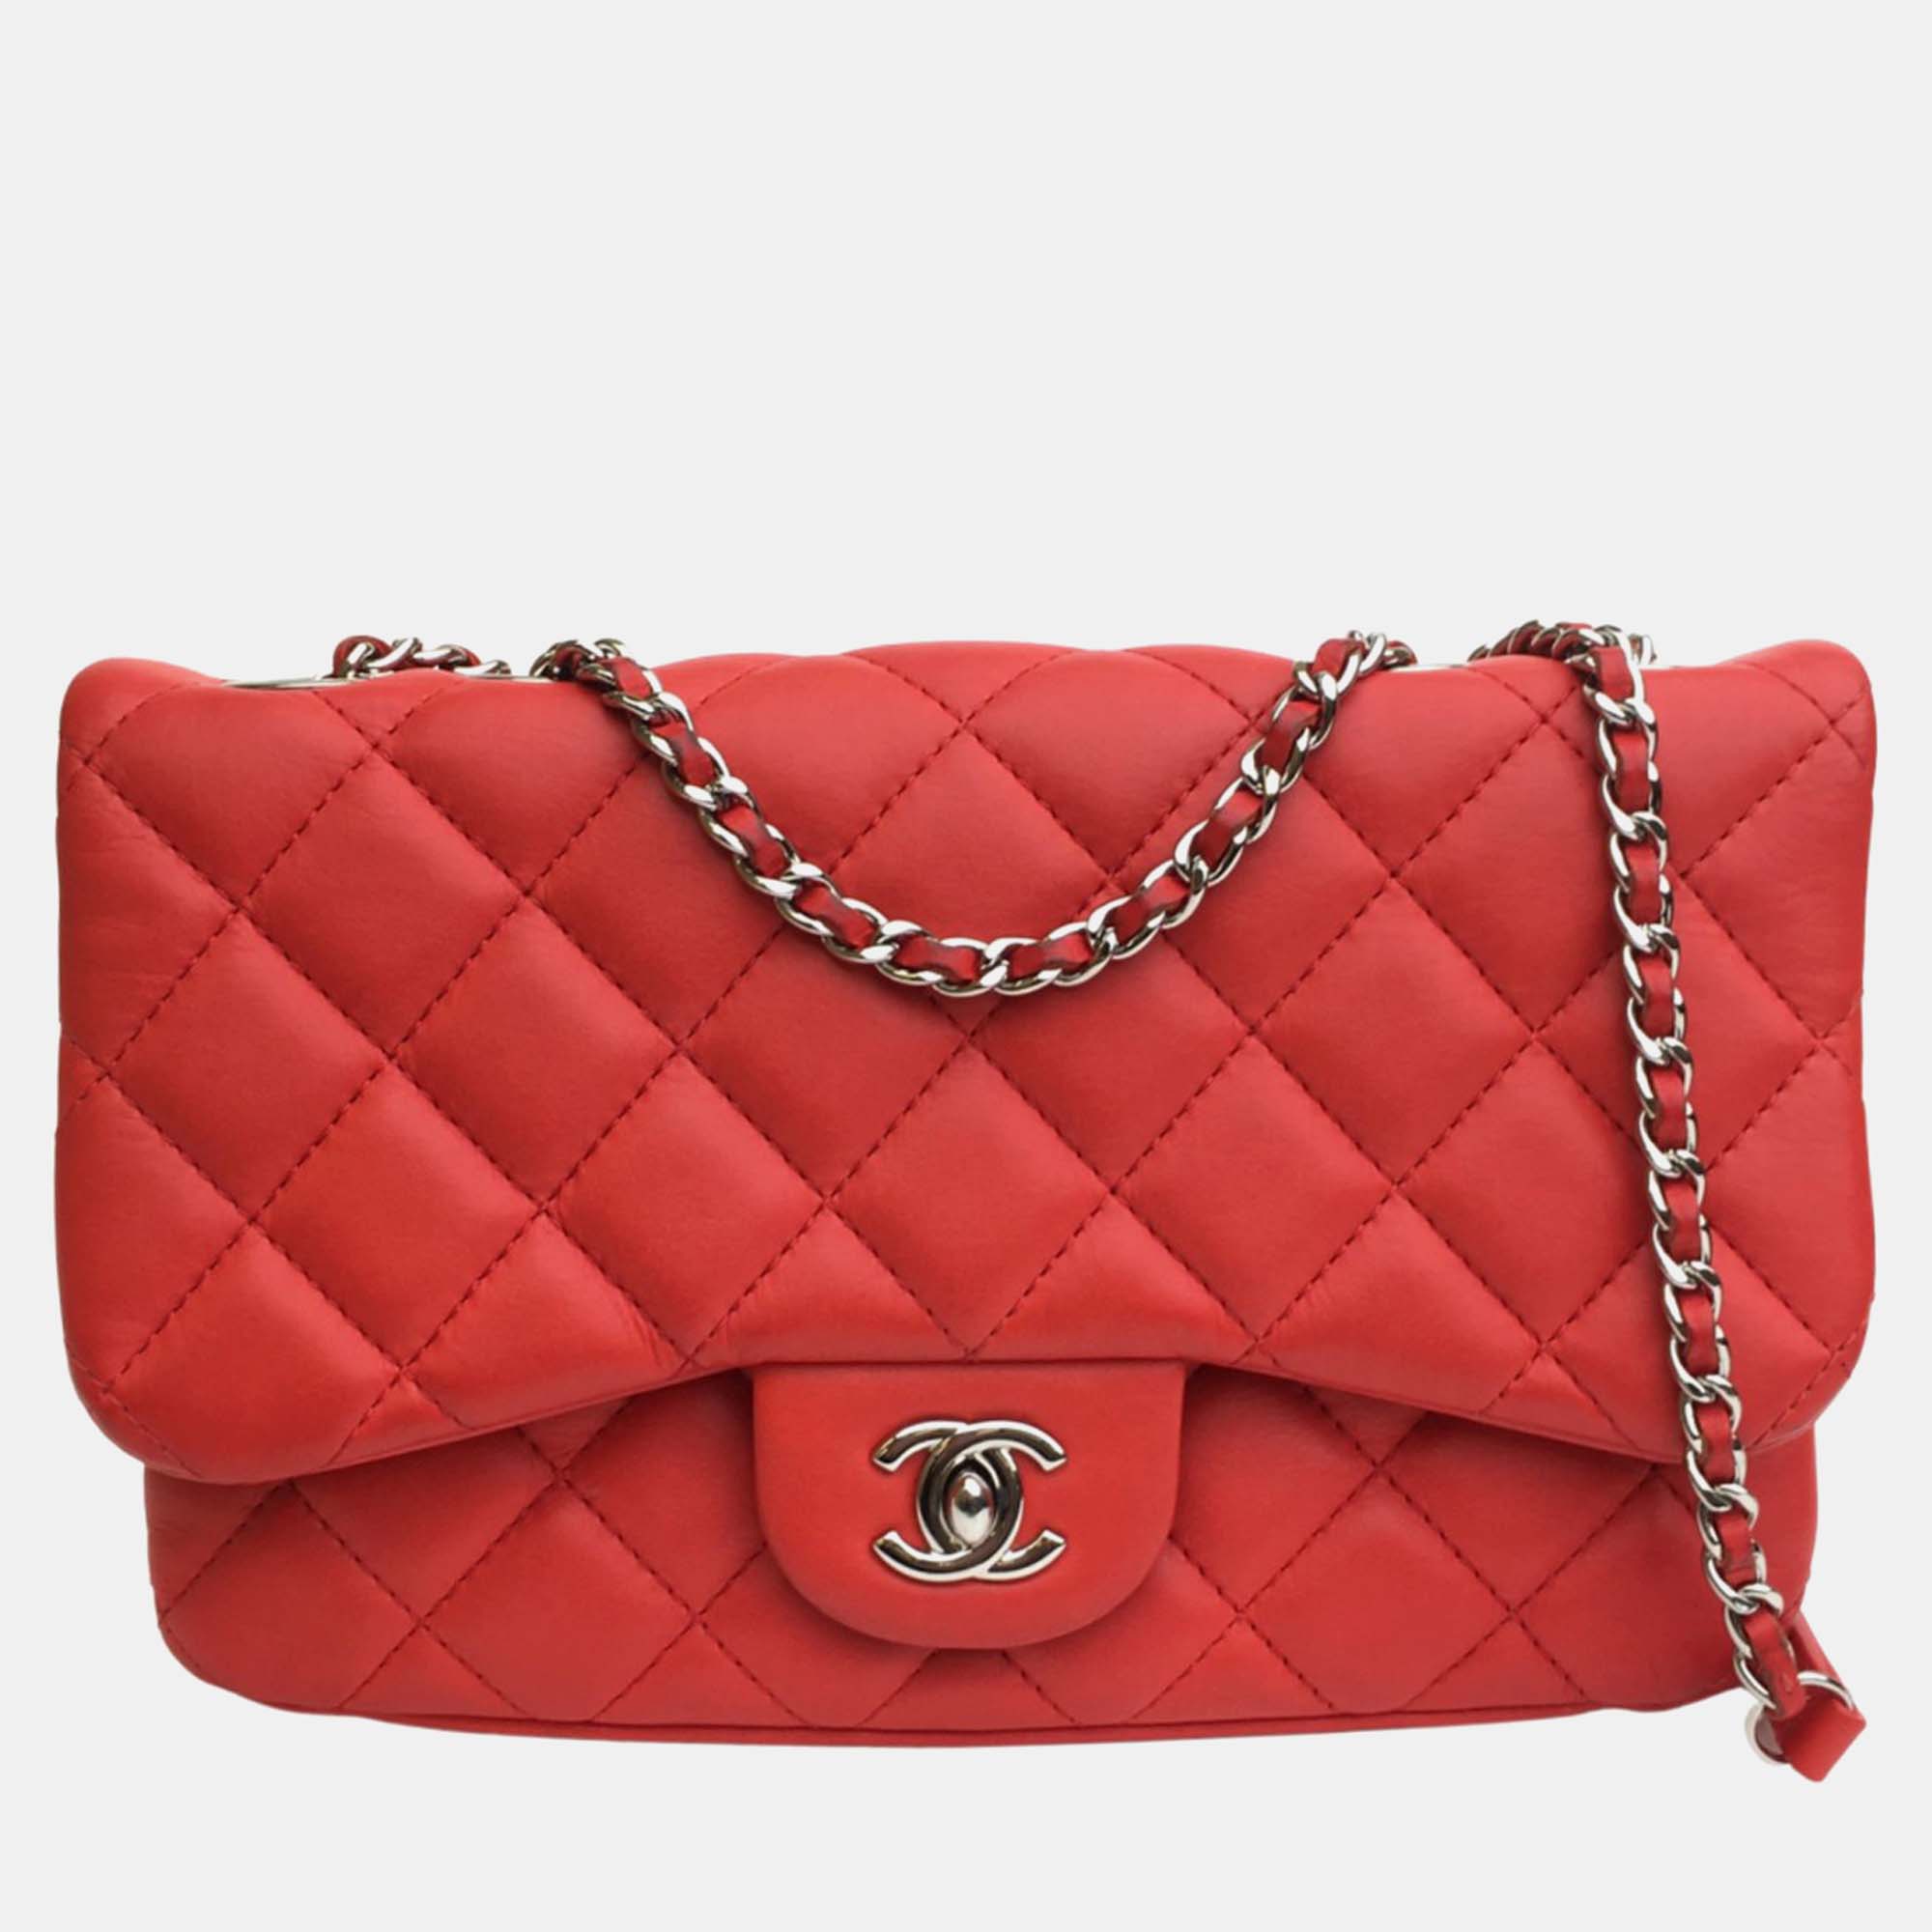 Chanel red leather  flap bag shoulder bag